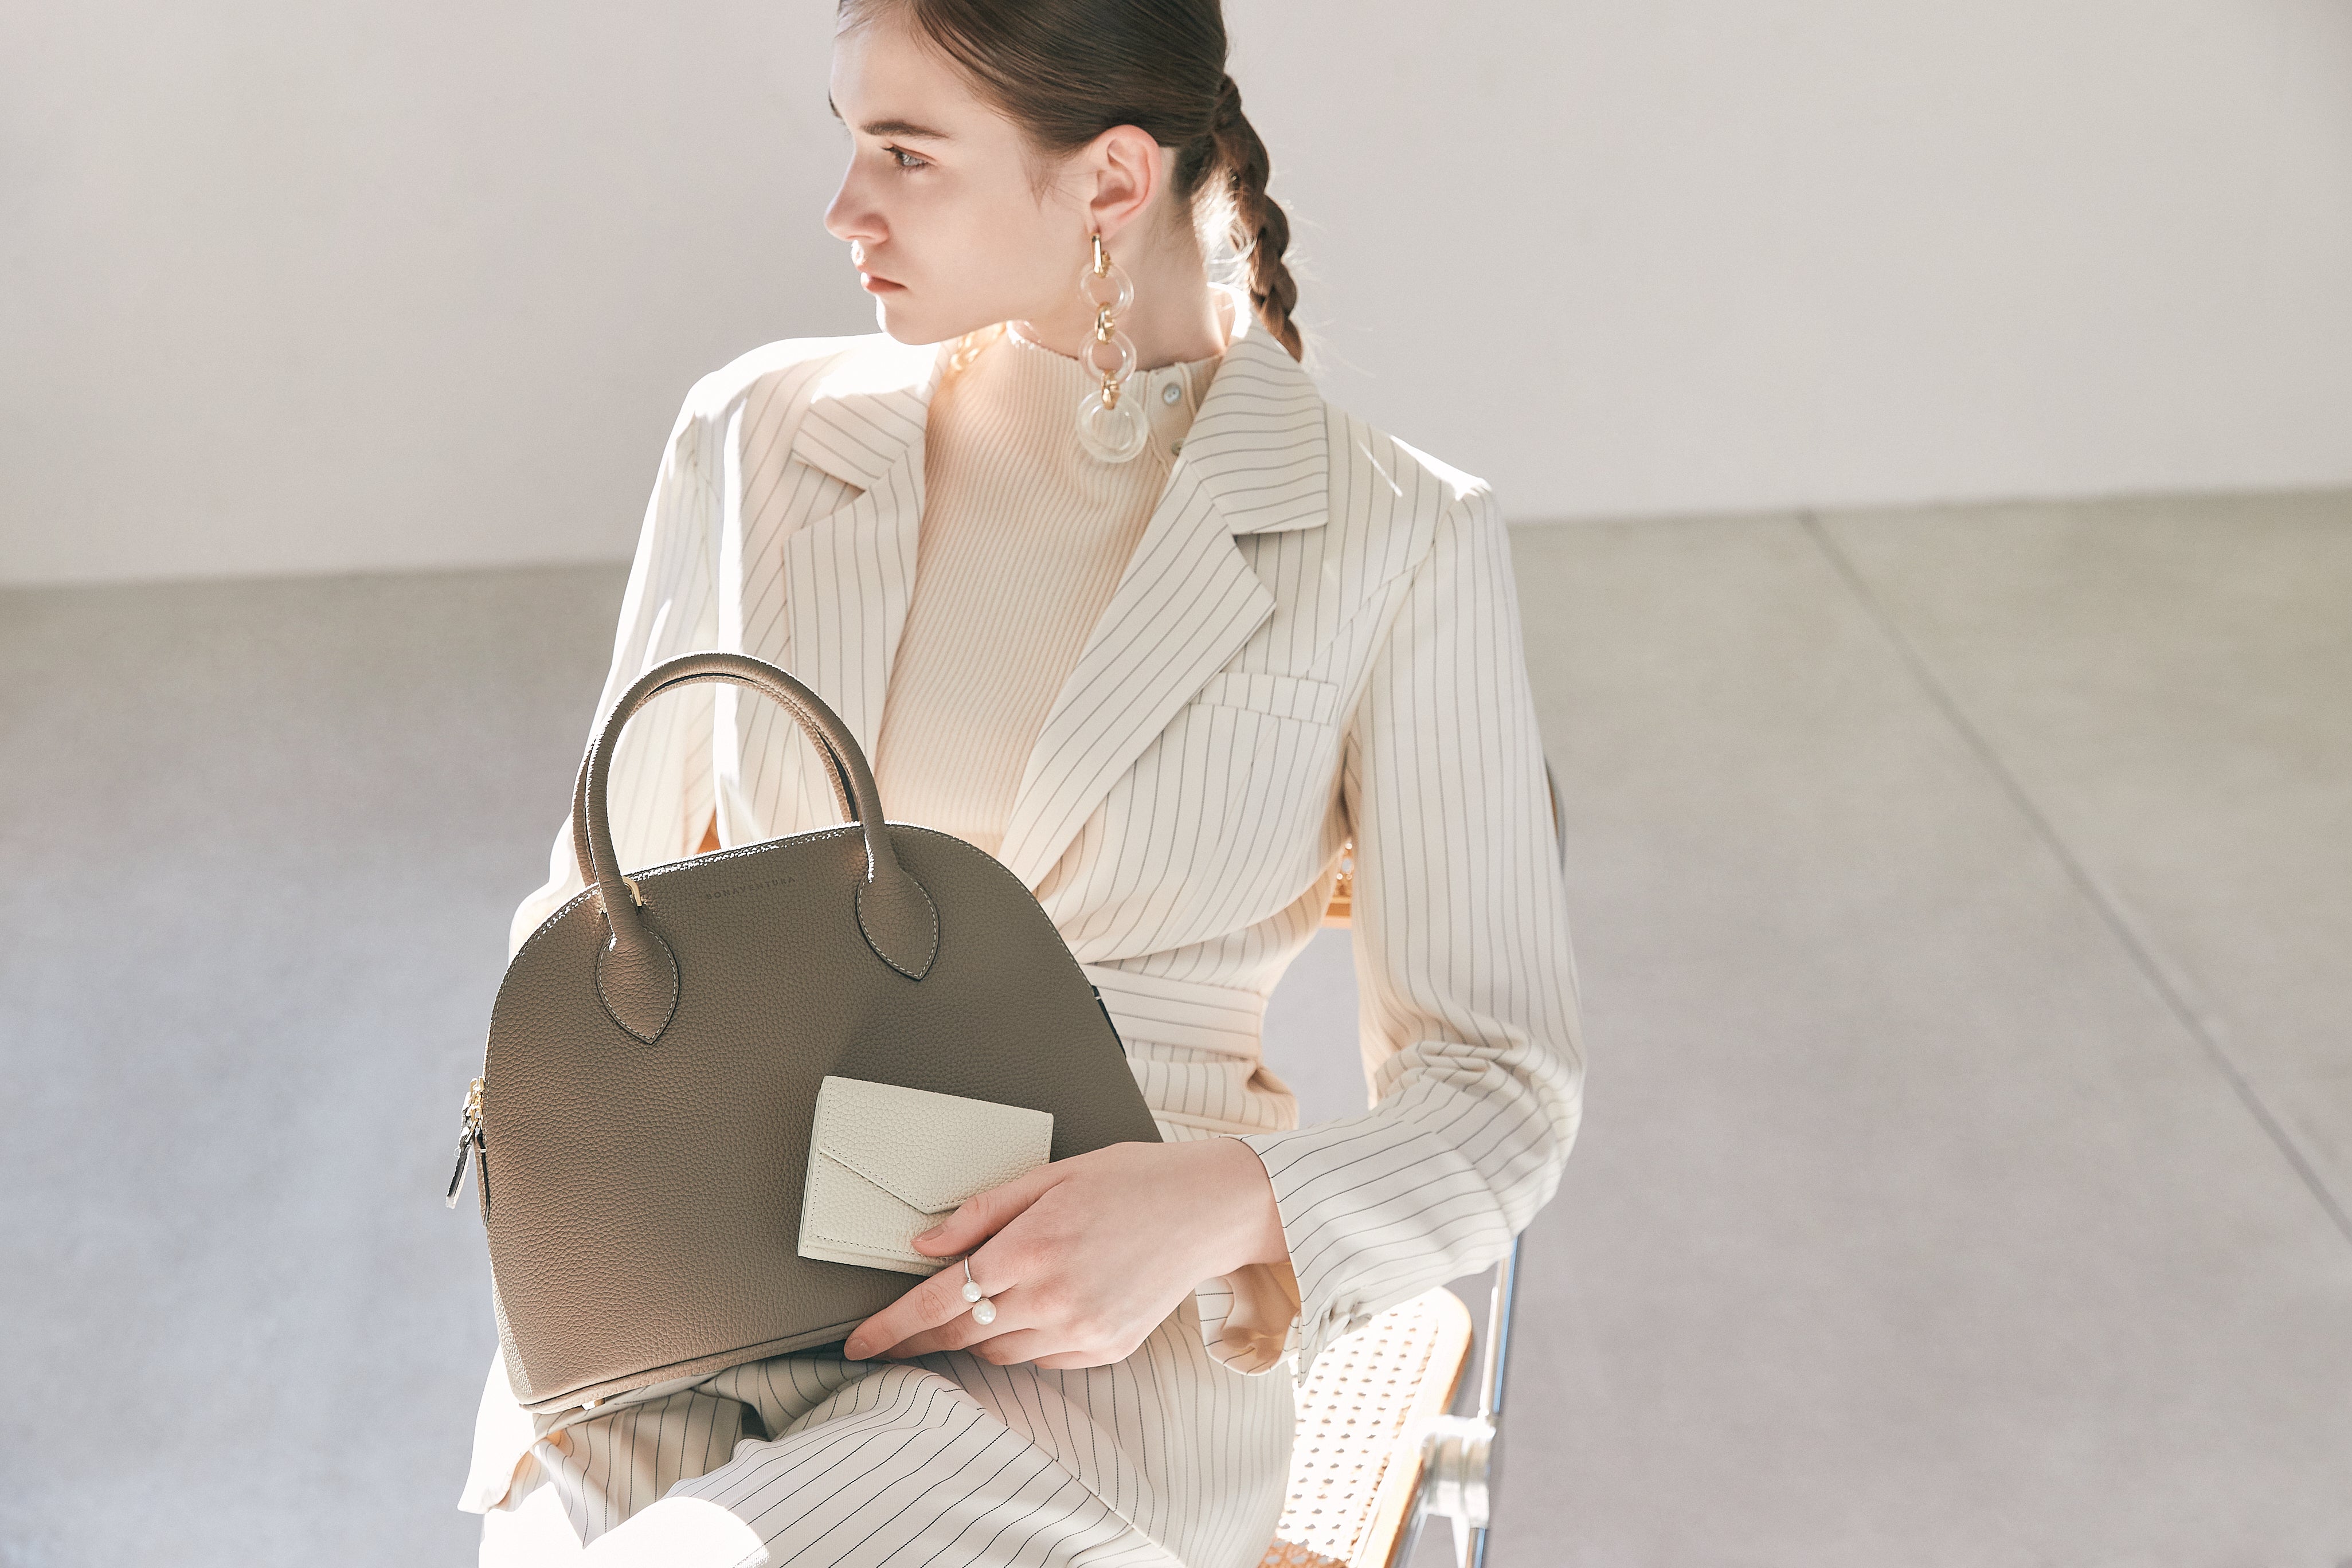 Elegantní podnikatelka nosí stylovou koženou kabelku od společnosti BONAVENTURA.